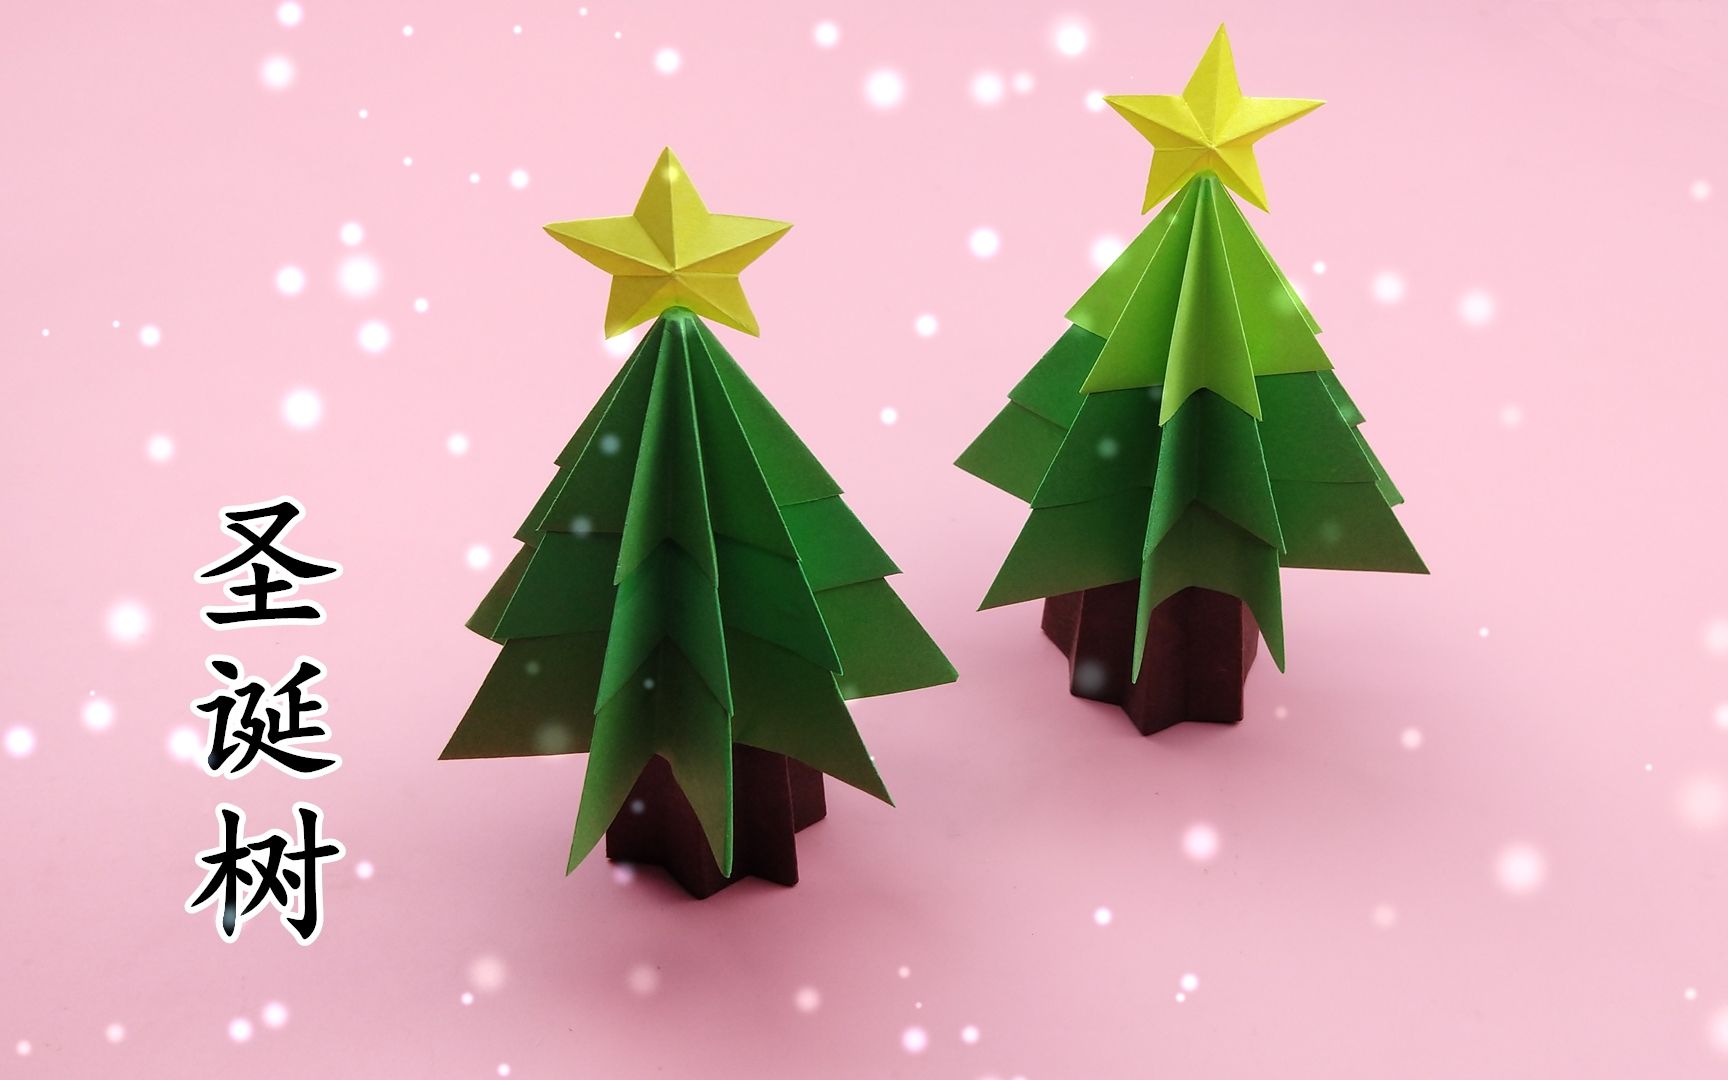 教你折漂亮的立体圣诞树,简单又好玩,圣诞节手工折纸diy教程